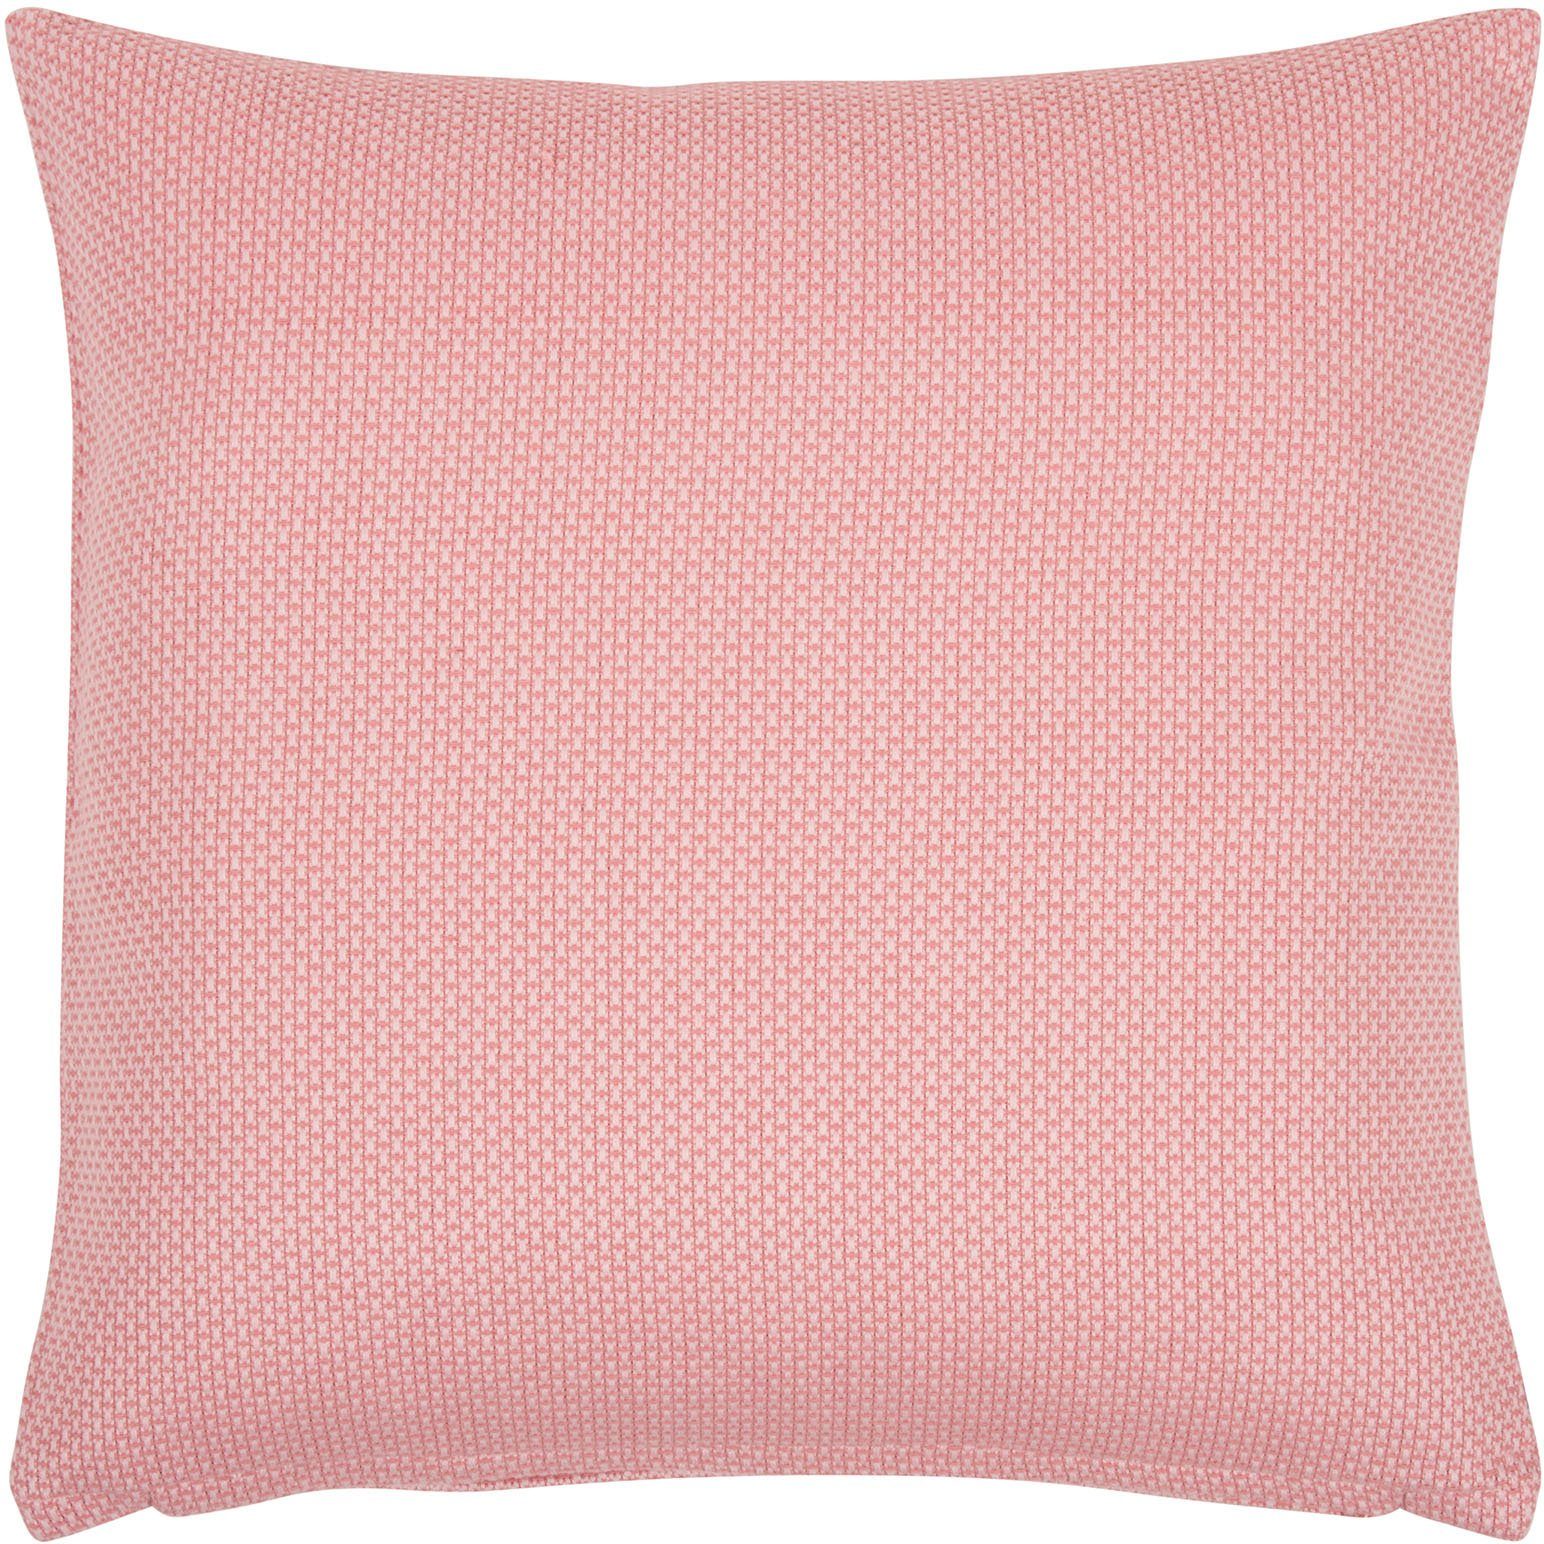 PAD Dekokissen Cane, einzigartiges Design, Kissenhülle ohne Füllung, 1 Stück pink